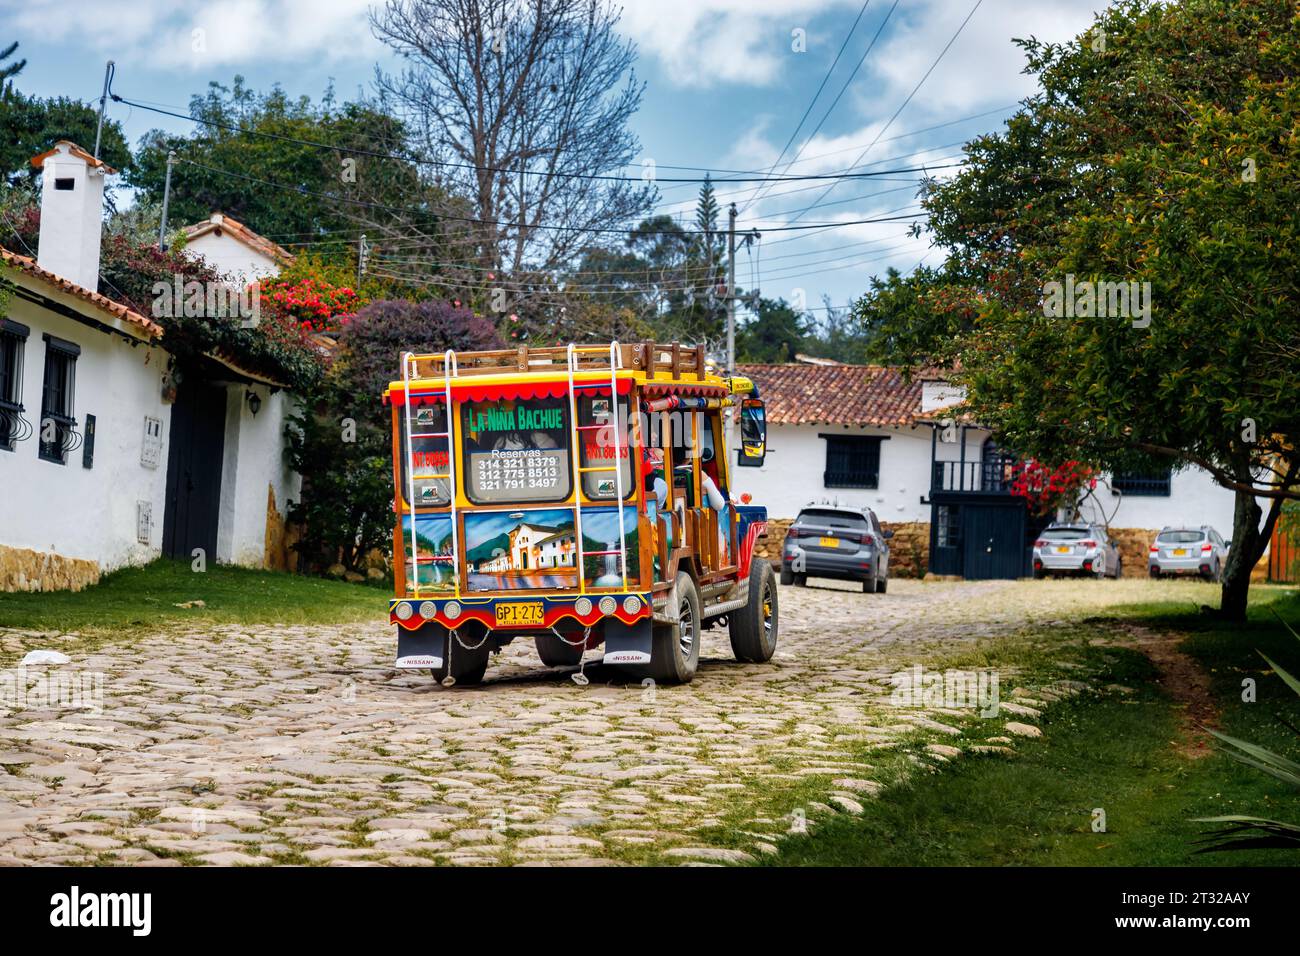 Villa de Leyva, Kolumbien - 5. Januar 2023: Ein typischer farbenfroher Truck transportiert Touristen auf einer Tour durch die Sehenswürdigkeiten der Stadt Stockfoto